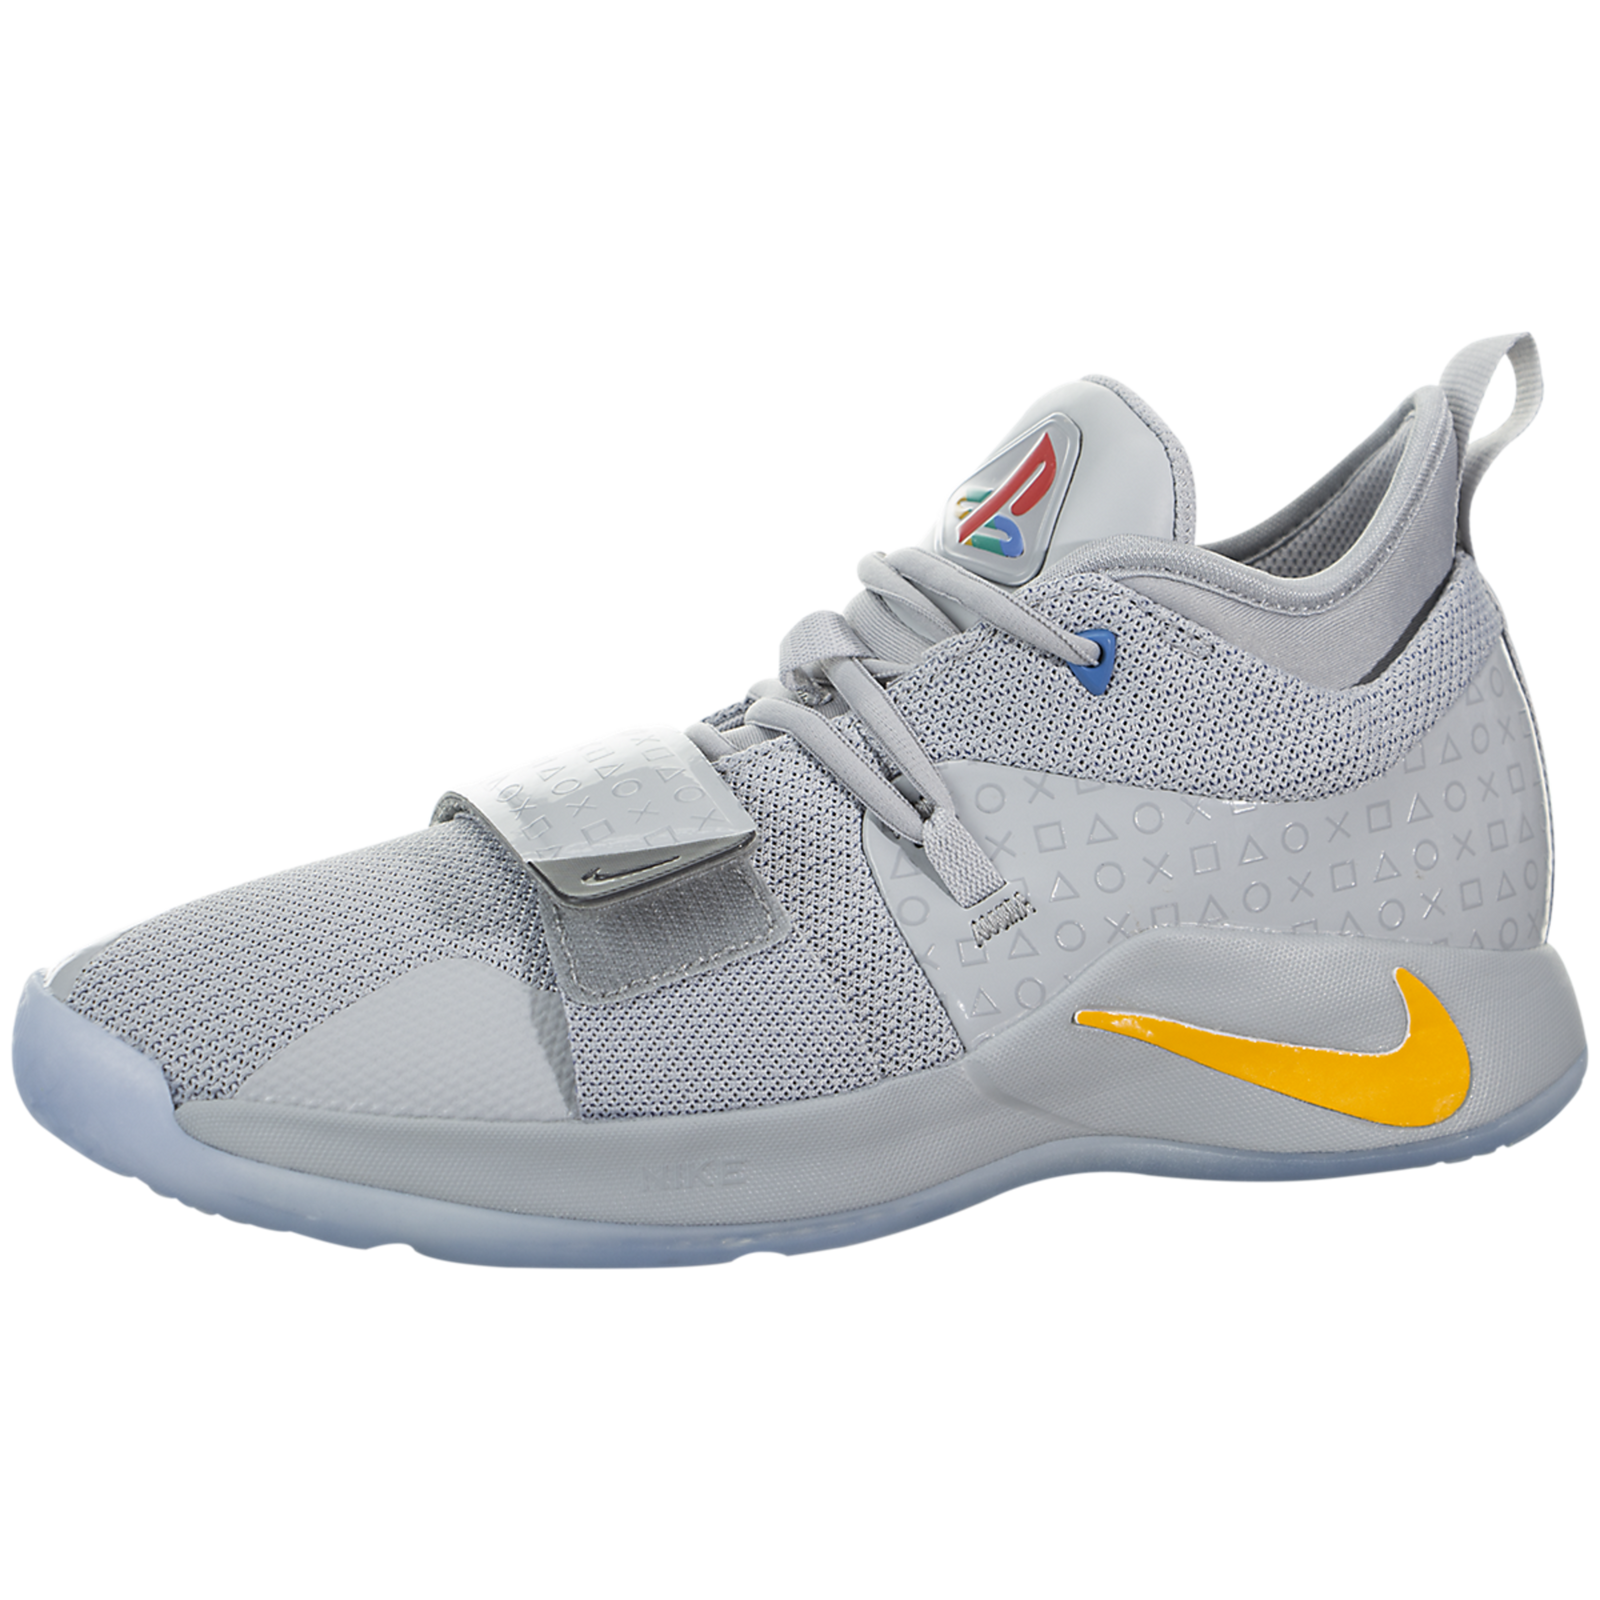 Nike Paul George 2.5 (Playstation) (Kids) - bq9677-001 - Sneakerhead ...